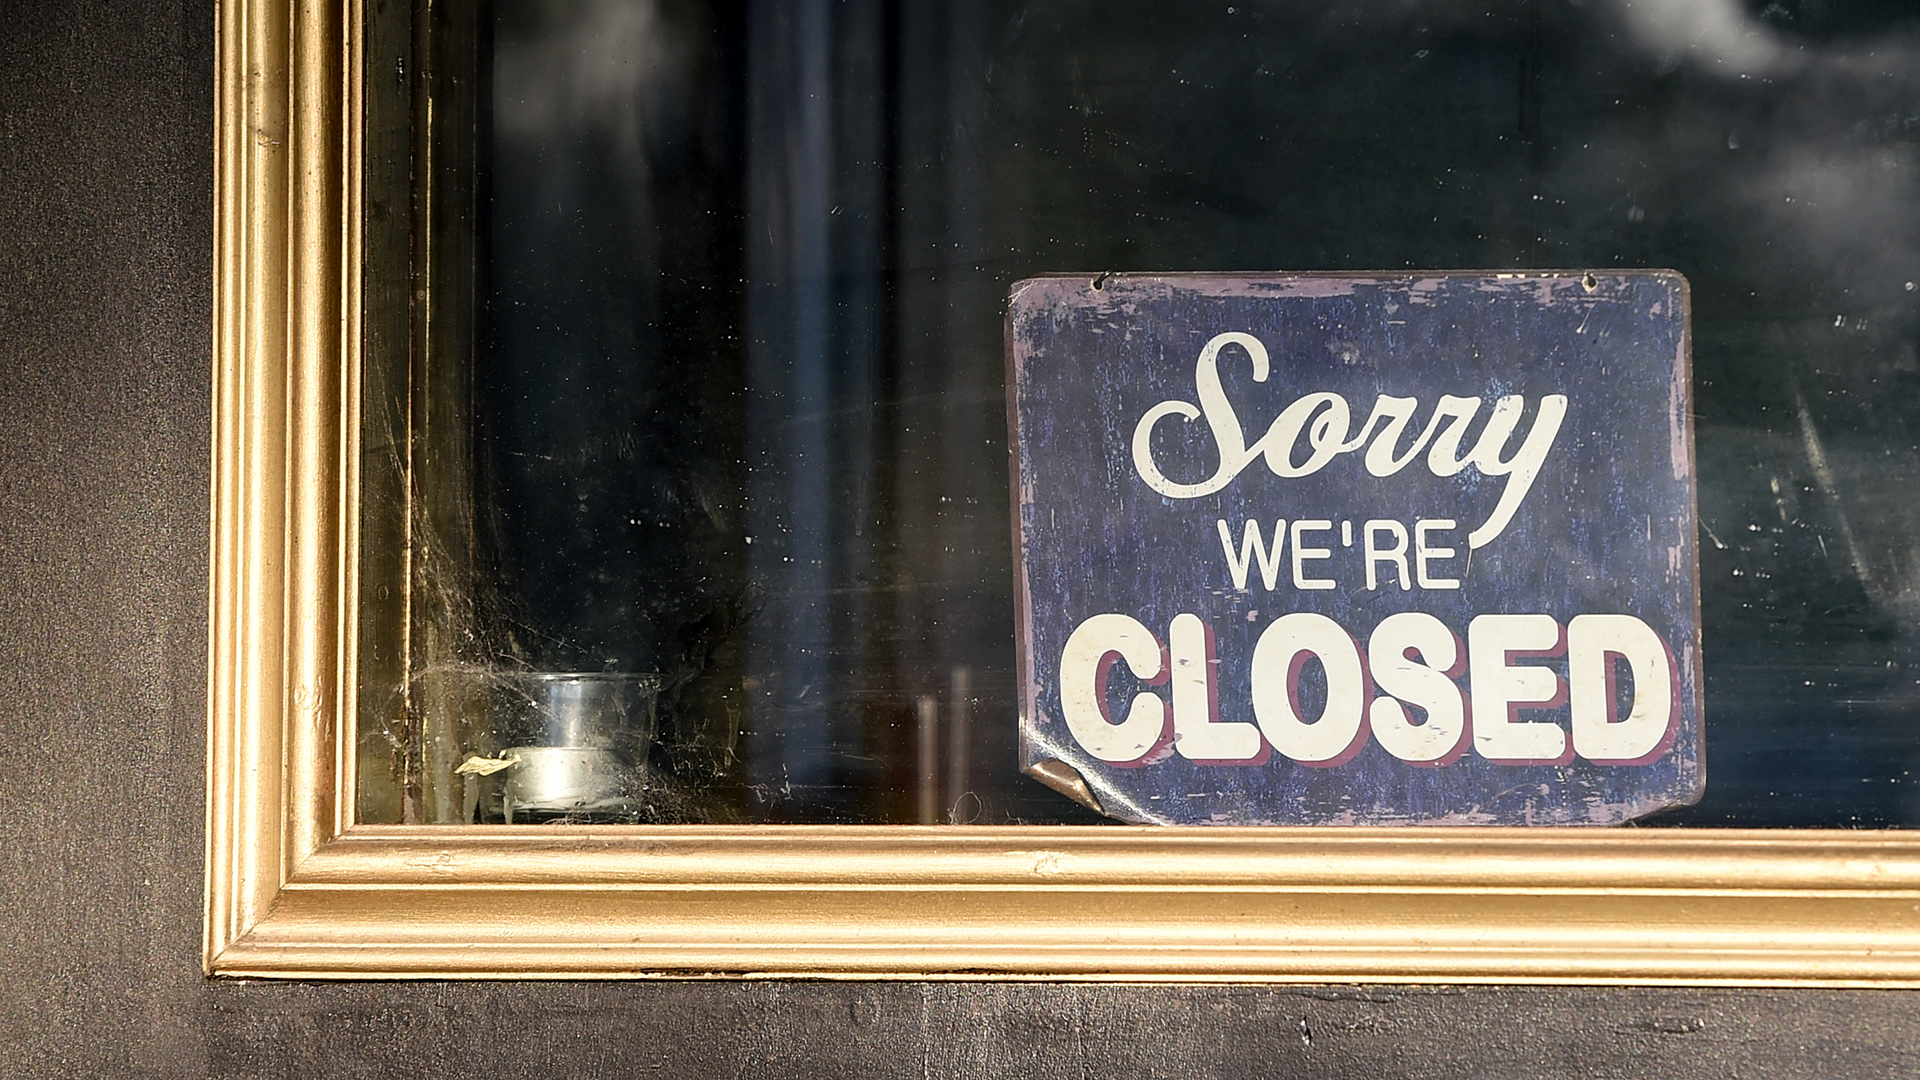 An der Tür eines geschlossenen Restaurants hängt ein Schild mit der Aufschrift "Sorry we're closed"